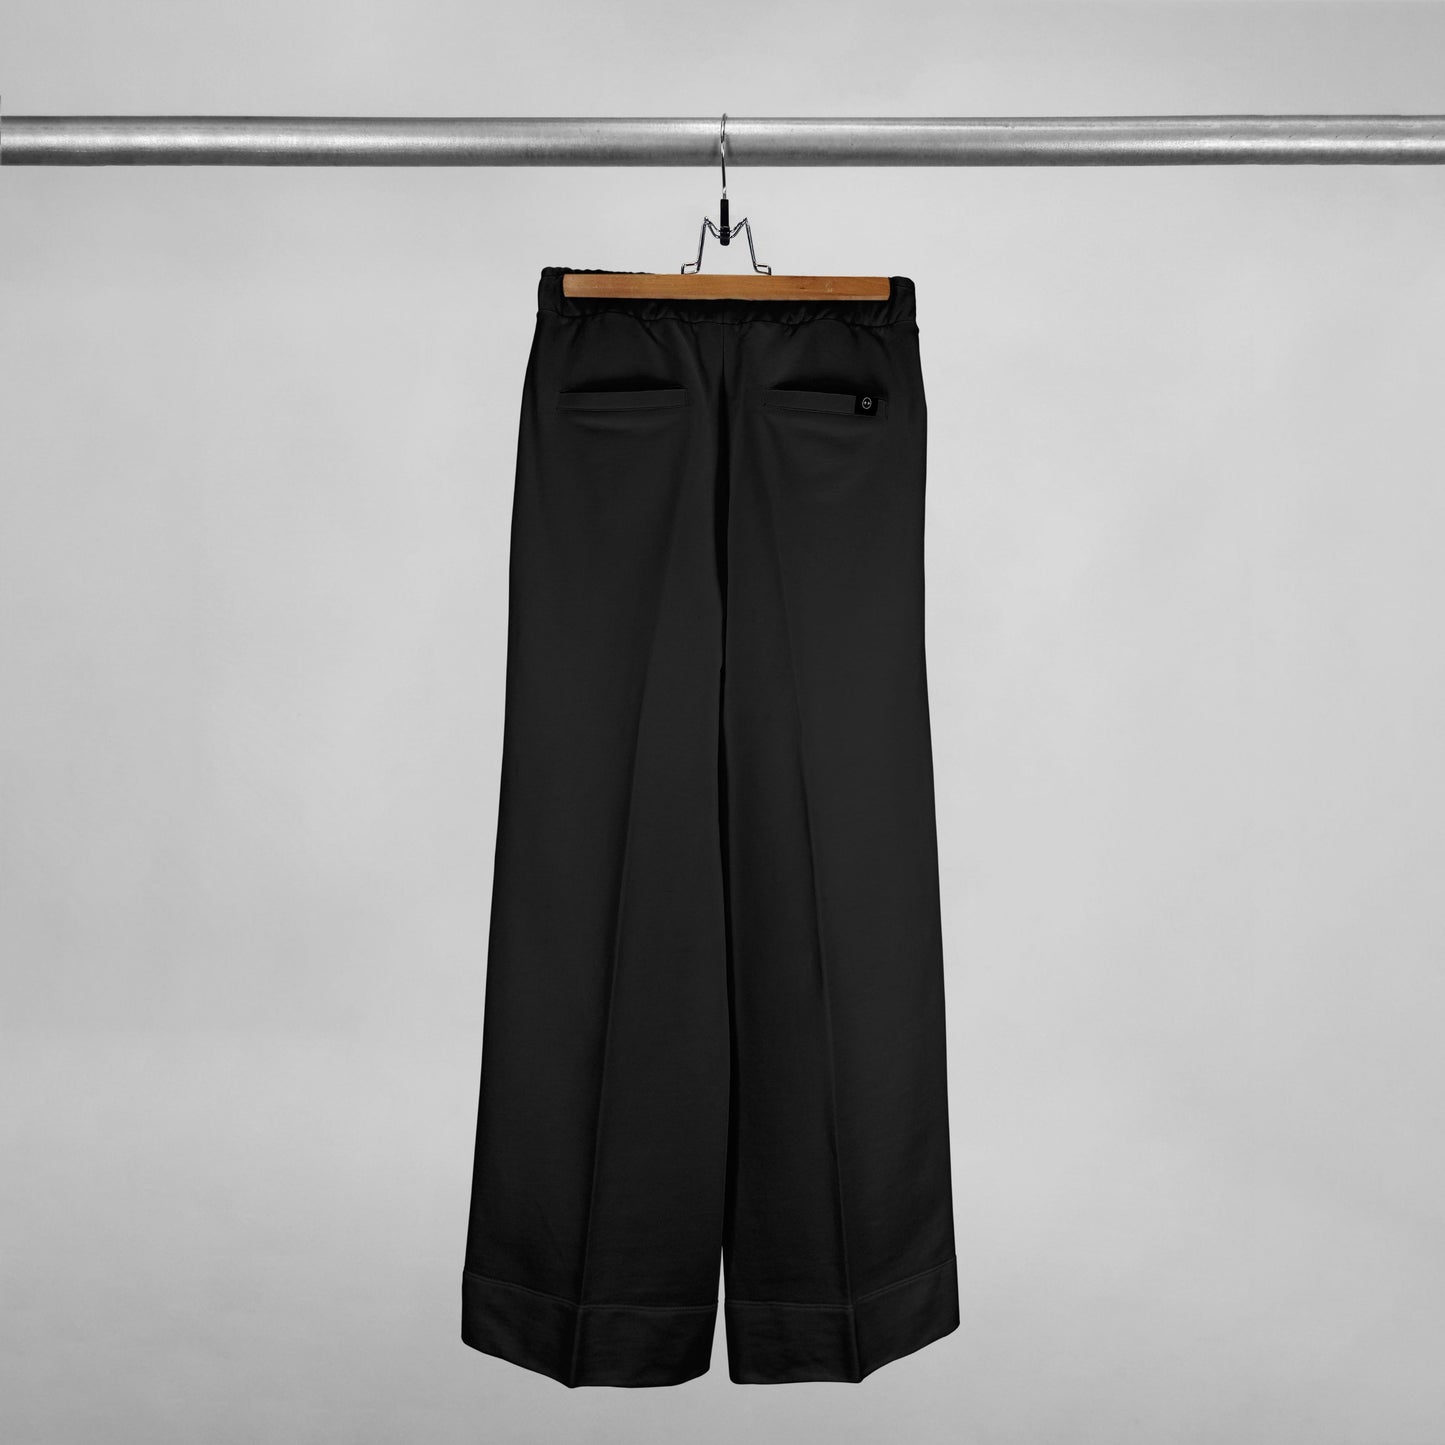 Parte trasera de pantalón bota ancha con bolsillos traseros color negro